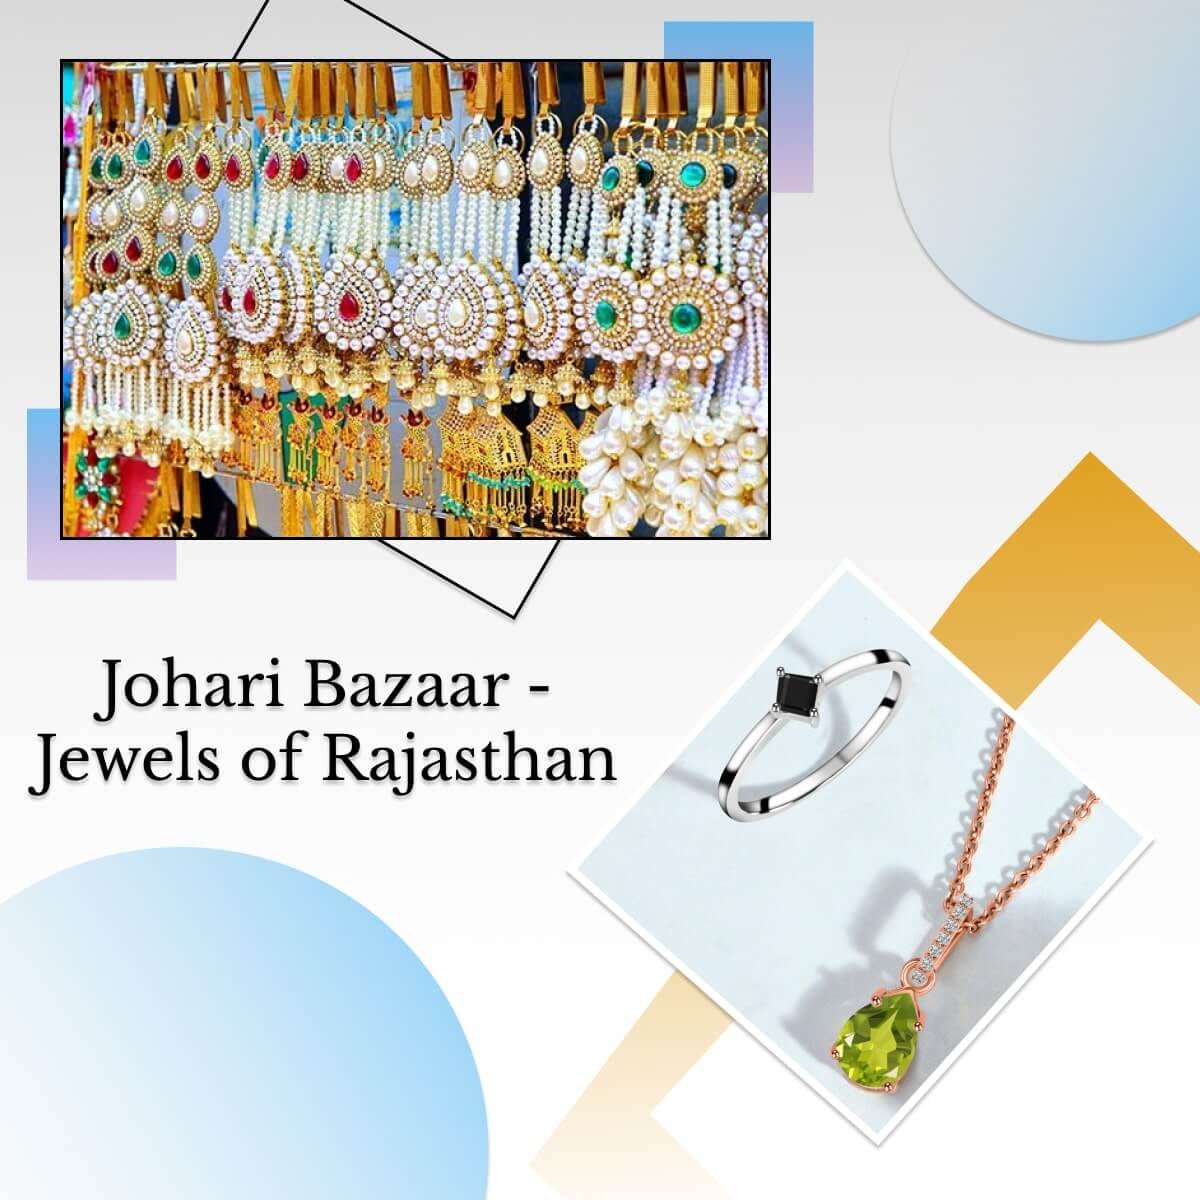 About Johari Bazaar